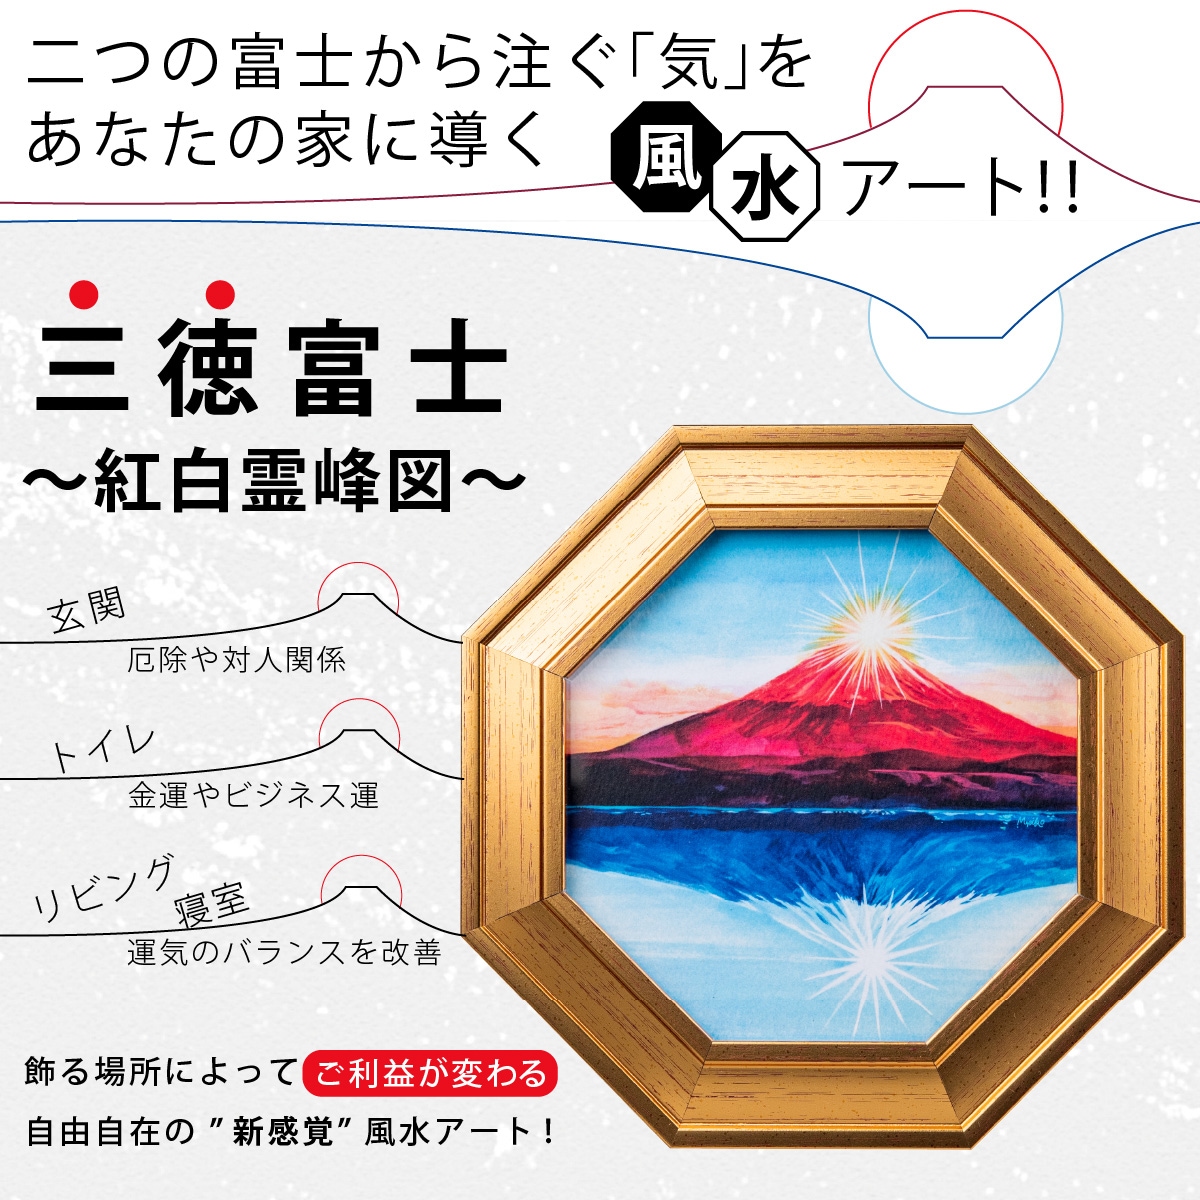 縁起が良いと言われる富士山の絵を飾って大開運